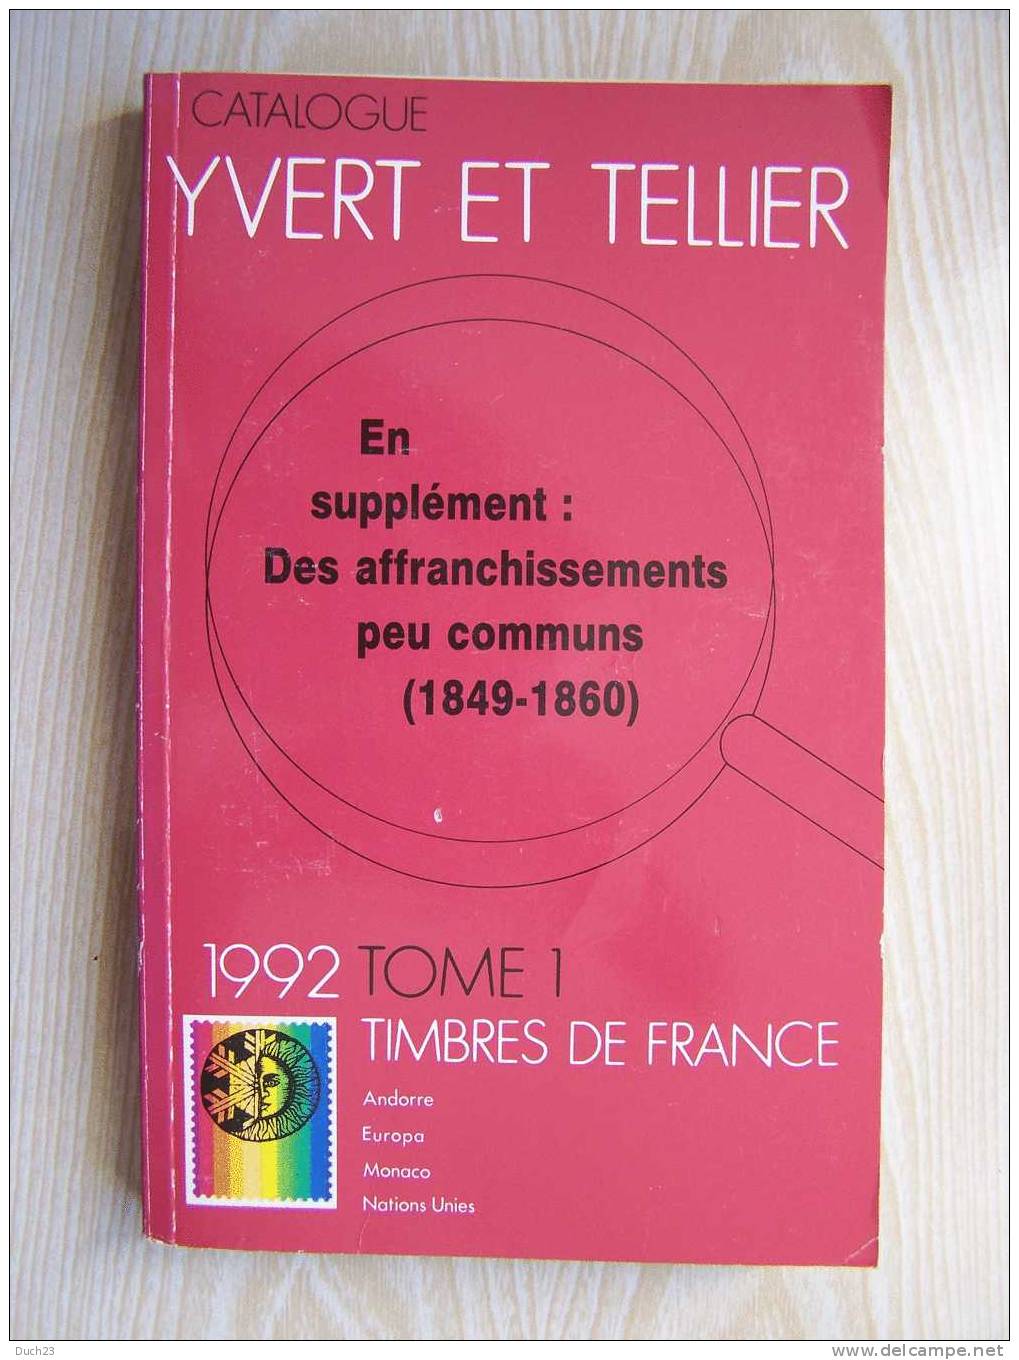 CATALOGUE DE COTATION YVERT ET TELLIER ANNEE 1992 TOME 1 TRES BON ETAT   REF CD - Francia